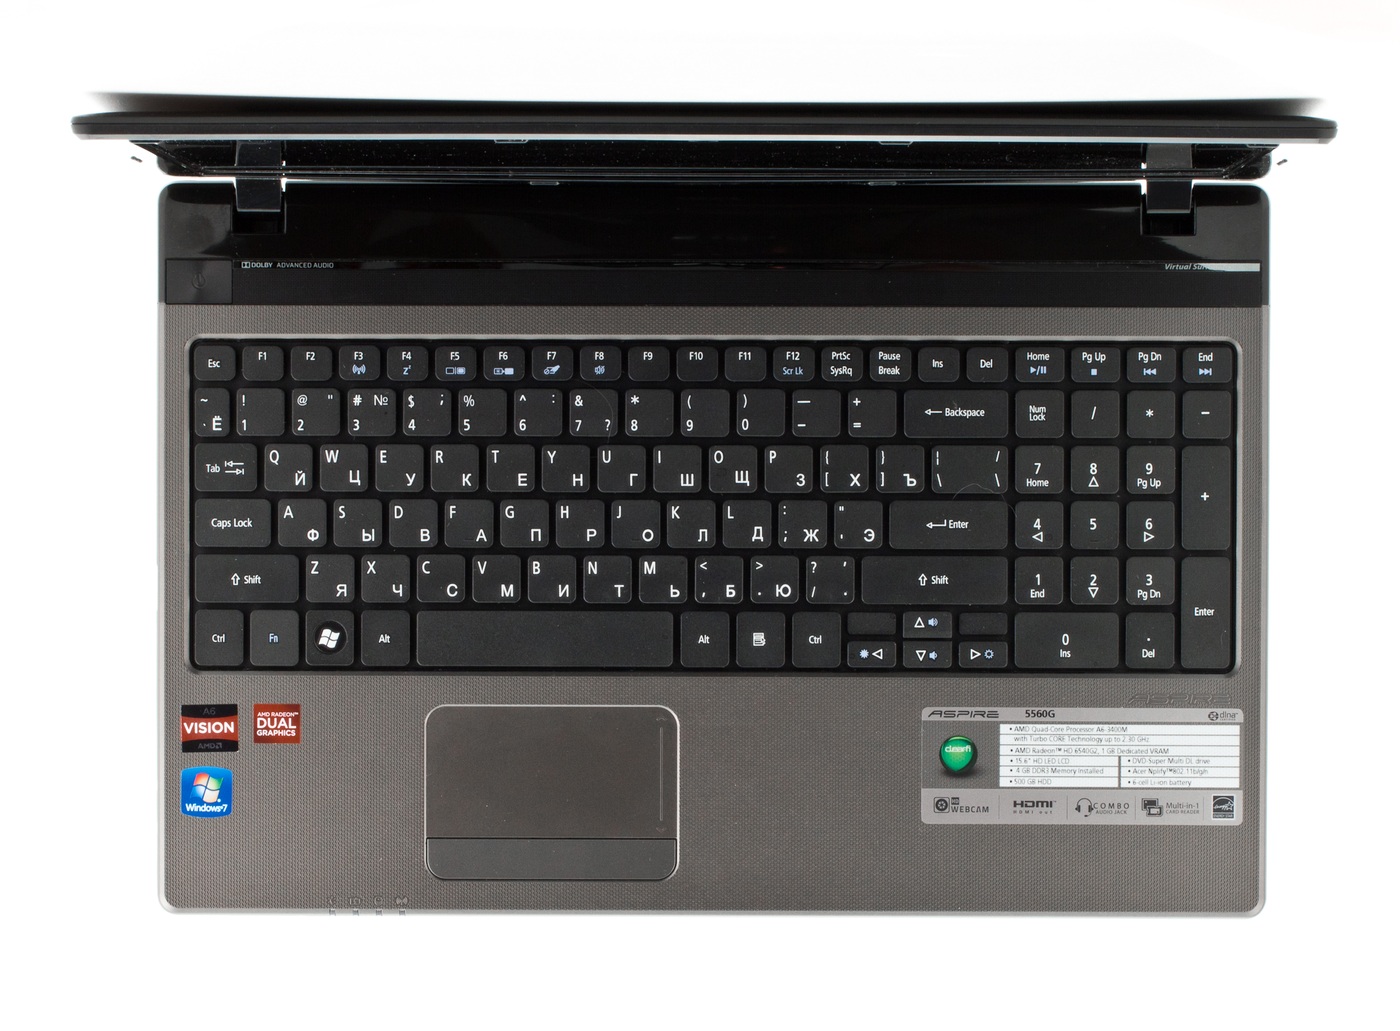 Ноутбук Acer Aspire 5560g Цена